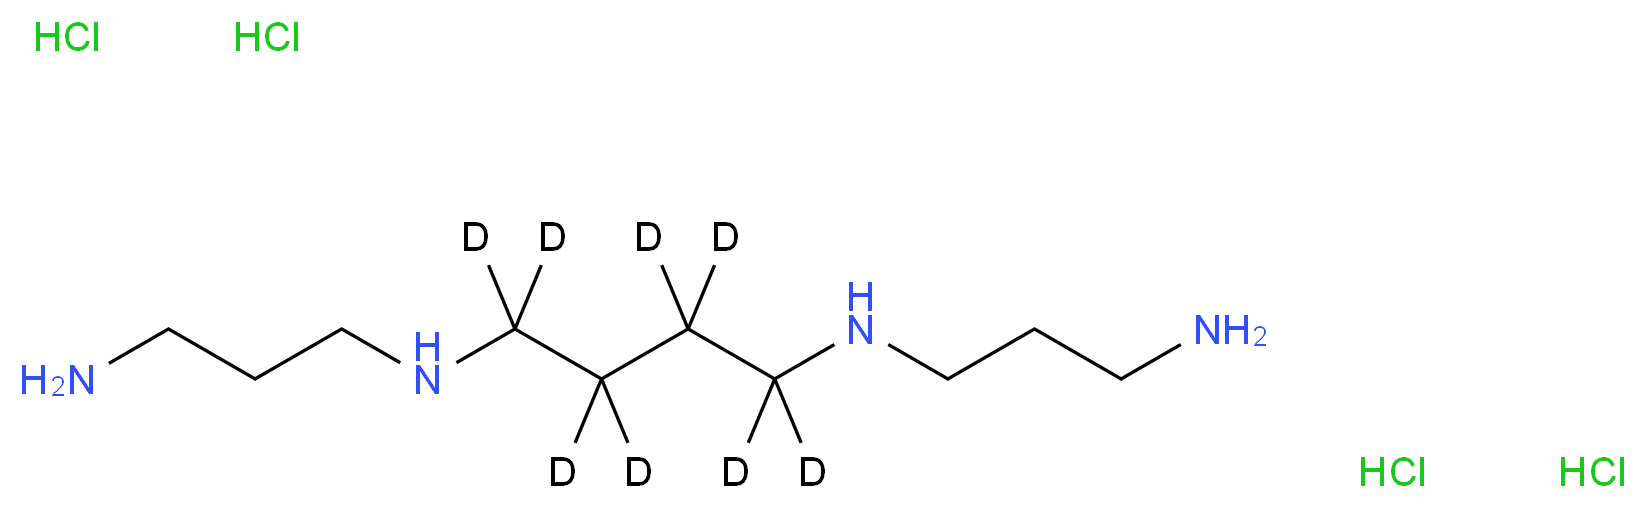 Spermine-(butane-d8) tetrahydrochloride_Molecular_structure_CAS_1173022-85-9)